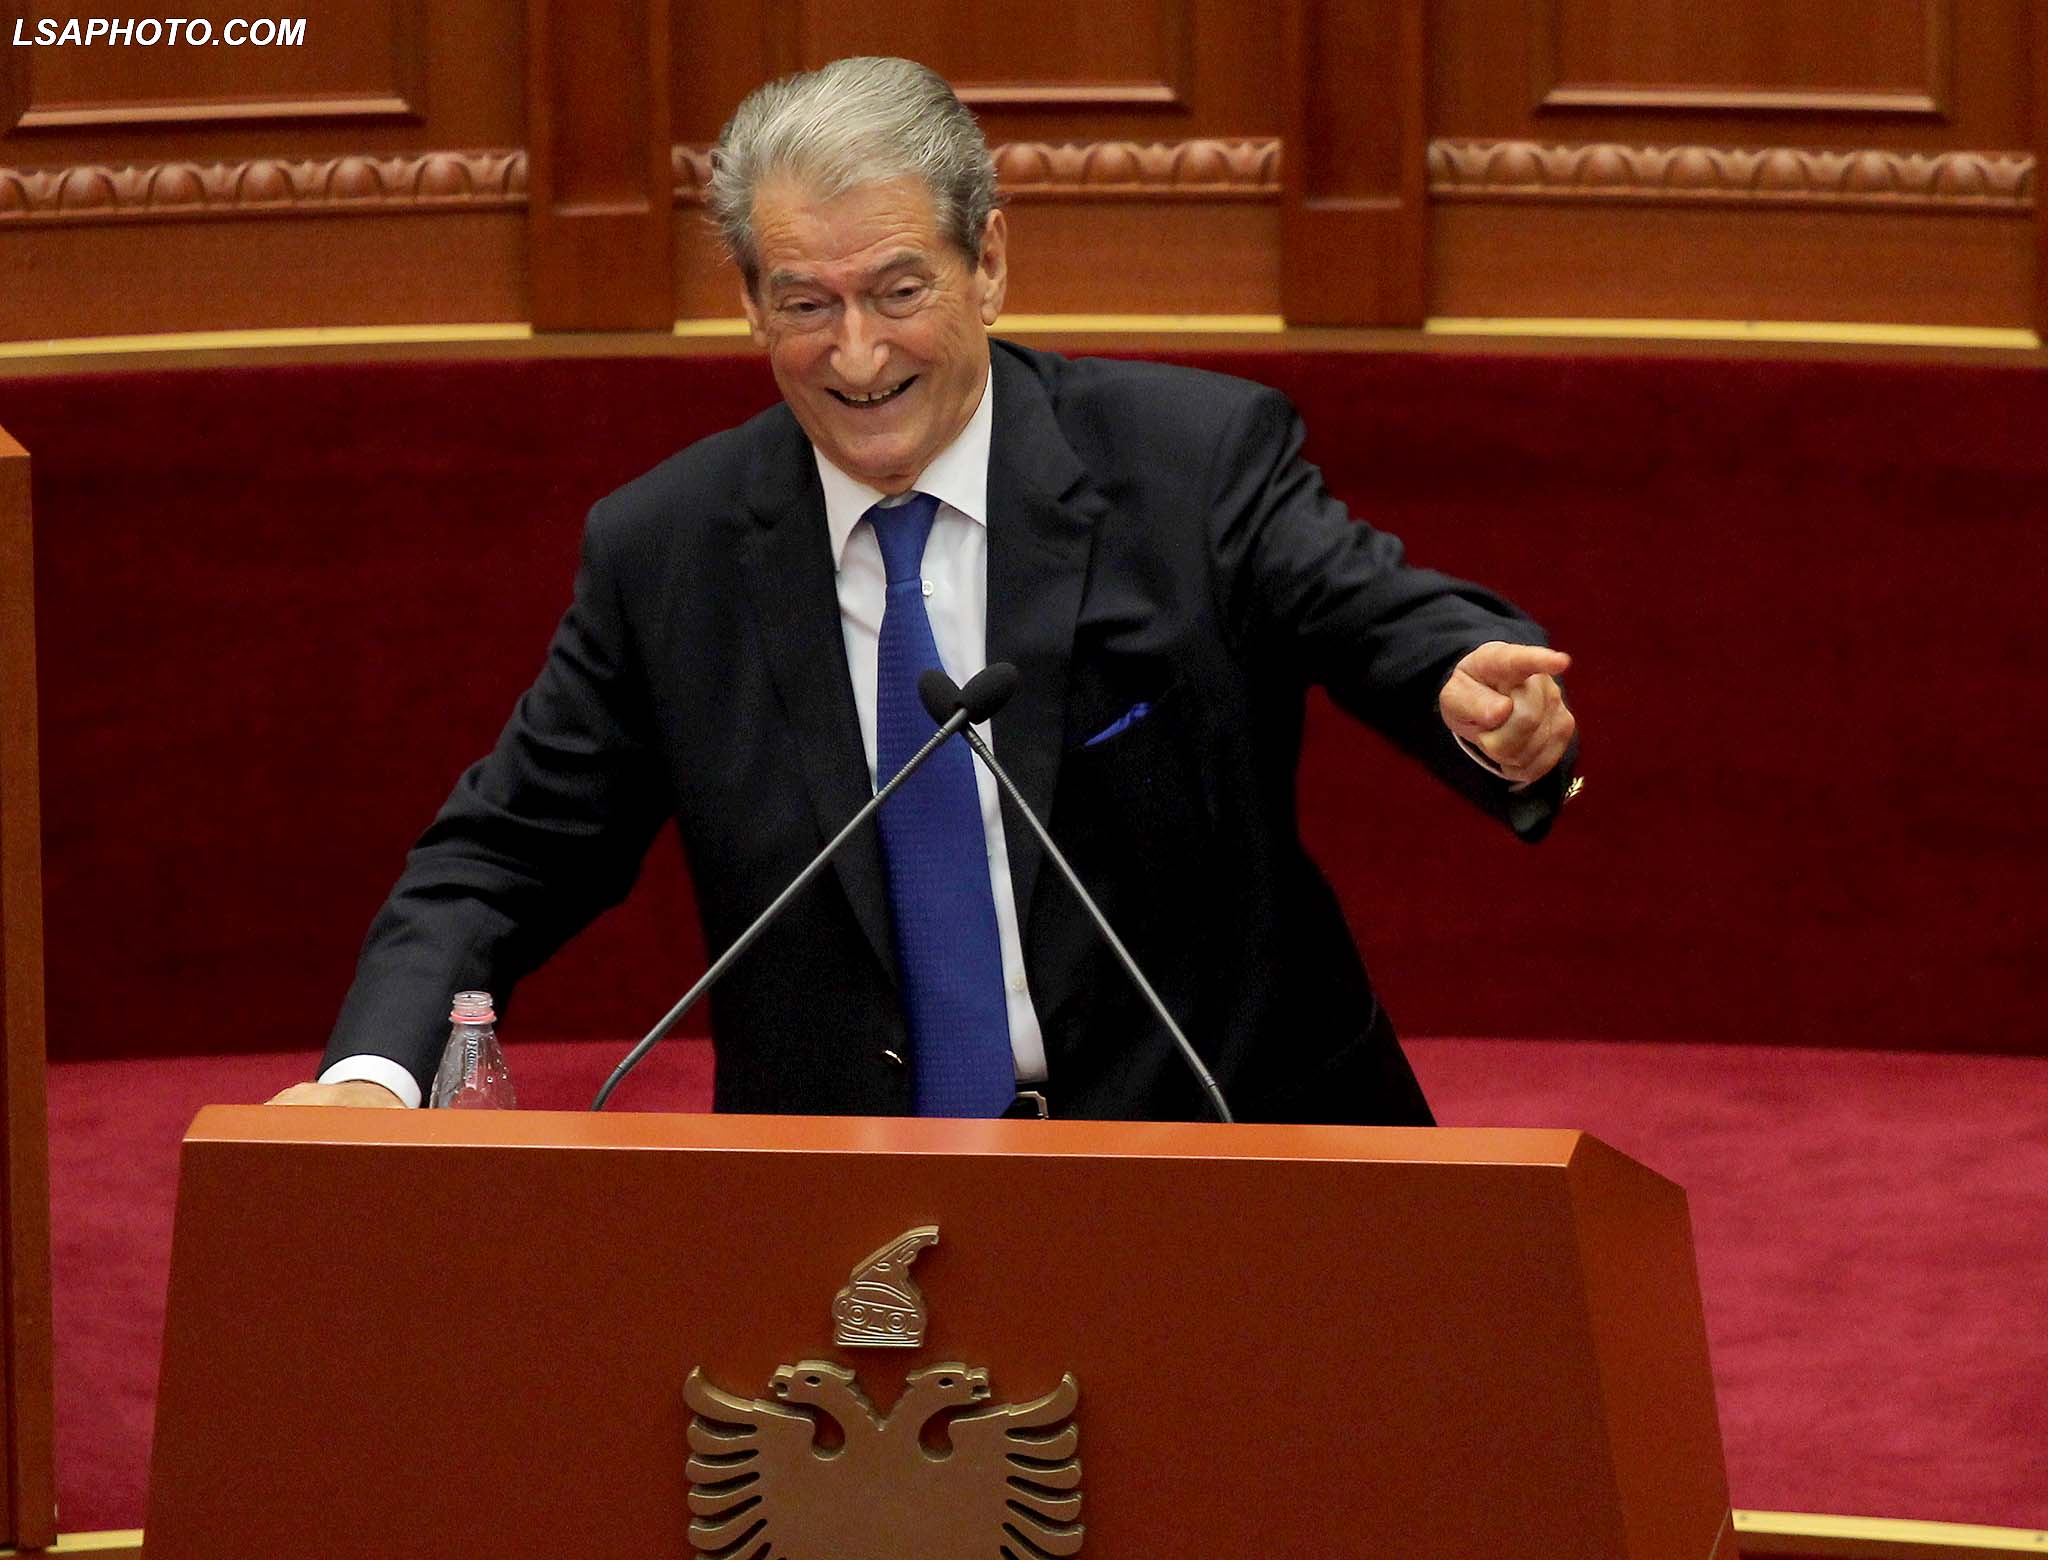 Ish Kryeministri, Sali Berisha, duke folur gjate seances se fundit parlamentare te sesionit te 6 te Kuvendit te Shqiperise, ku ne rend te dites jane projektligjet per Reformen ne Drejtesi./r/n/r/nFormer Prime Minister Sali Berisha, speaks during a parliamentary session.